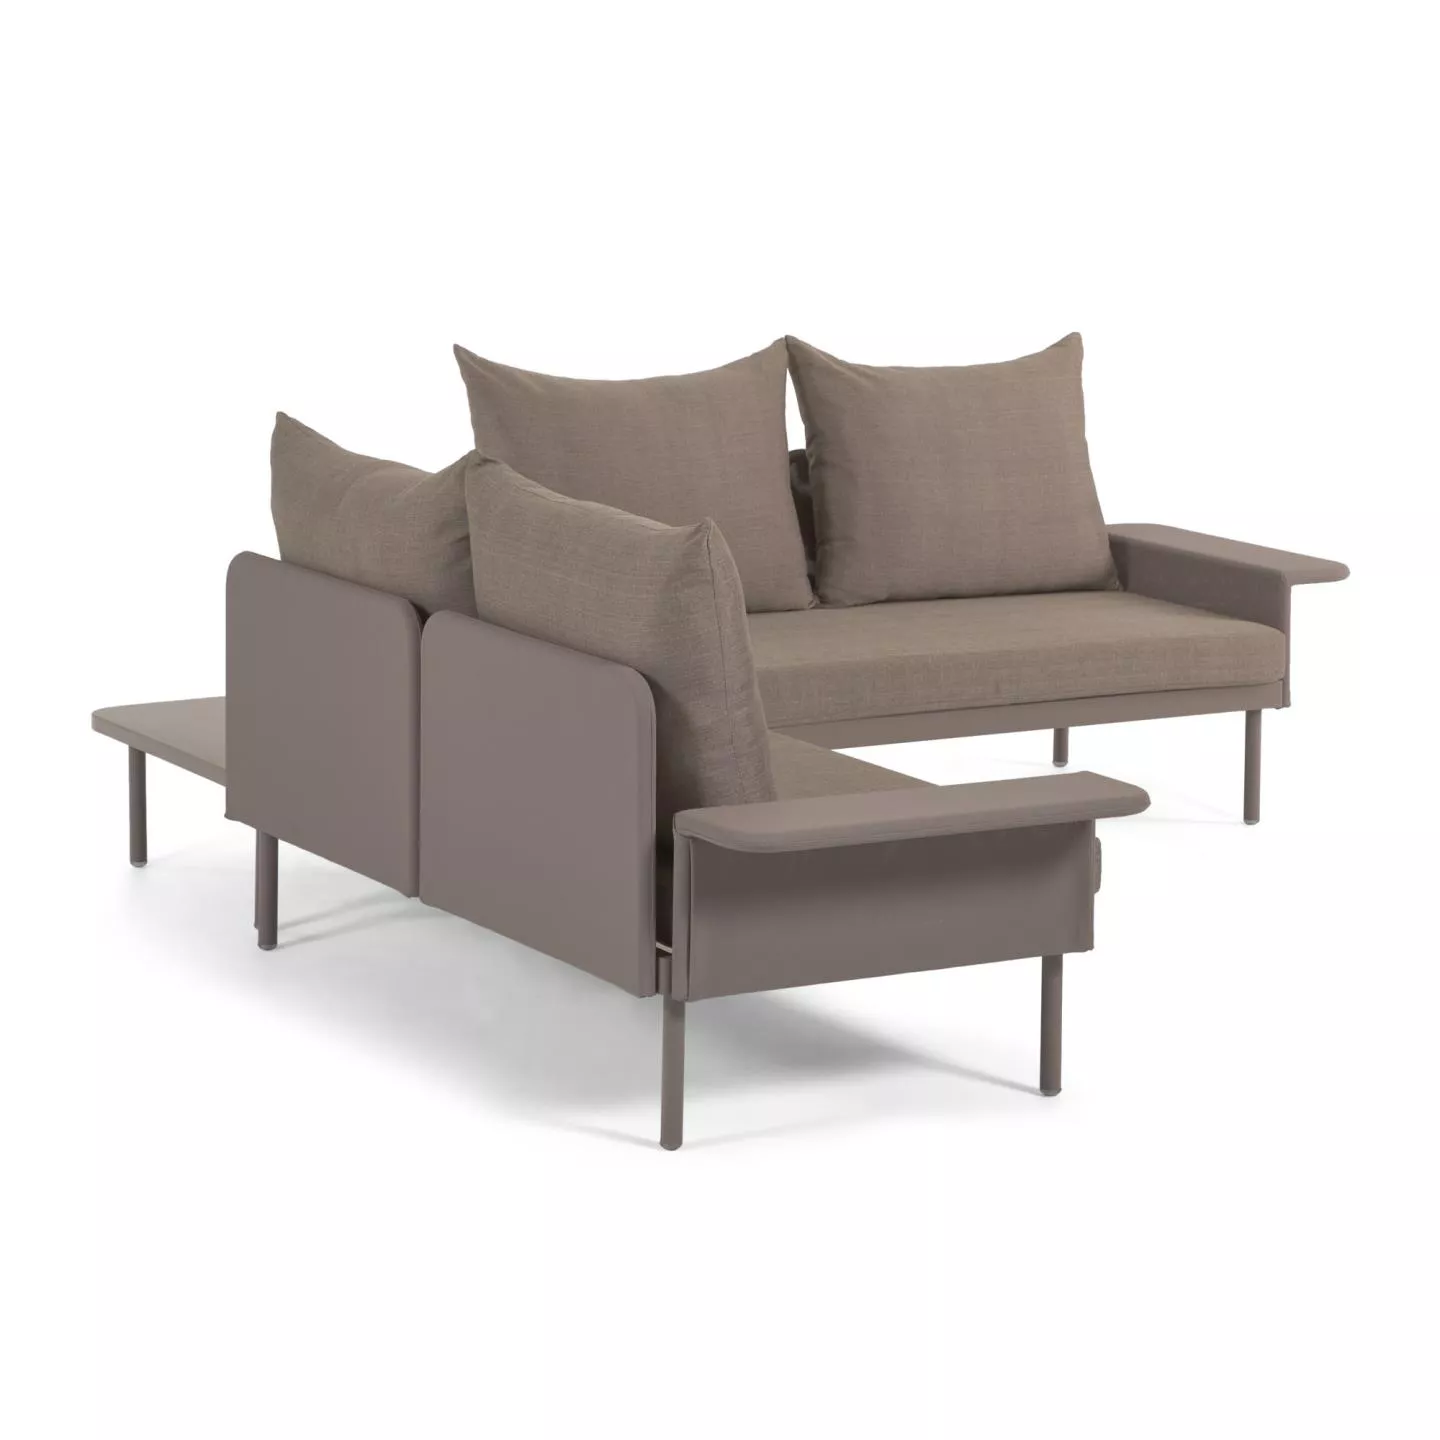 Угловой алюминиевый диван La Forma Zaltana с коричневой матовой отделкой 164 см